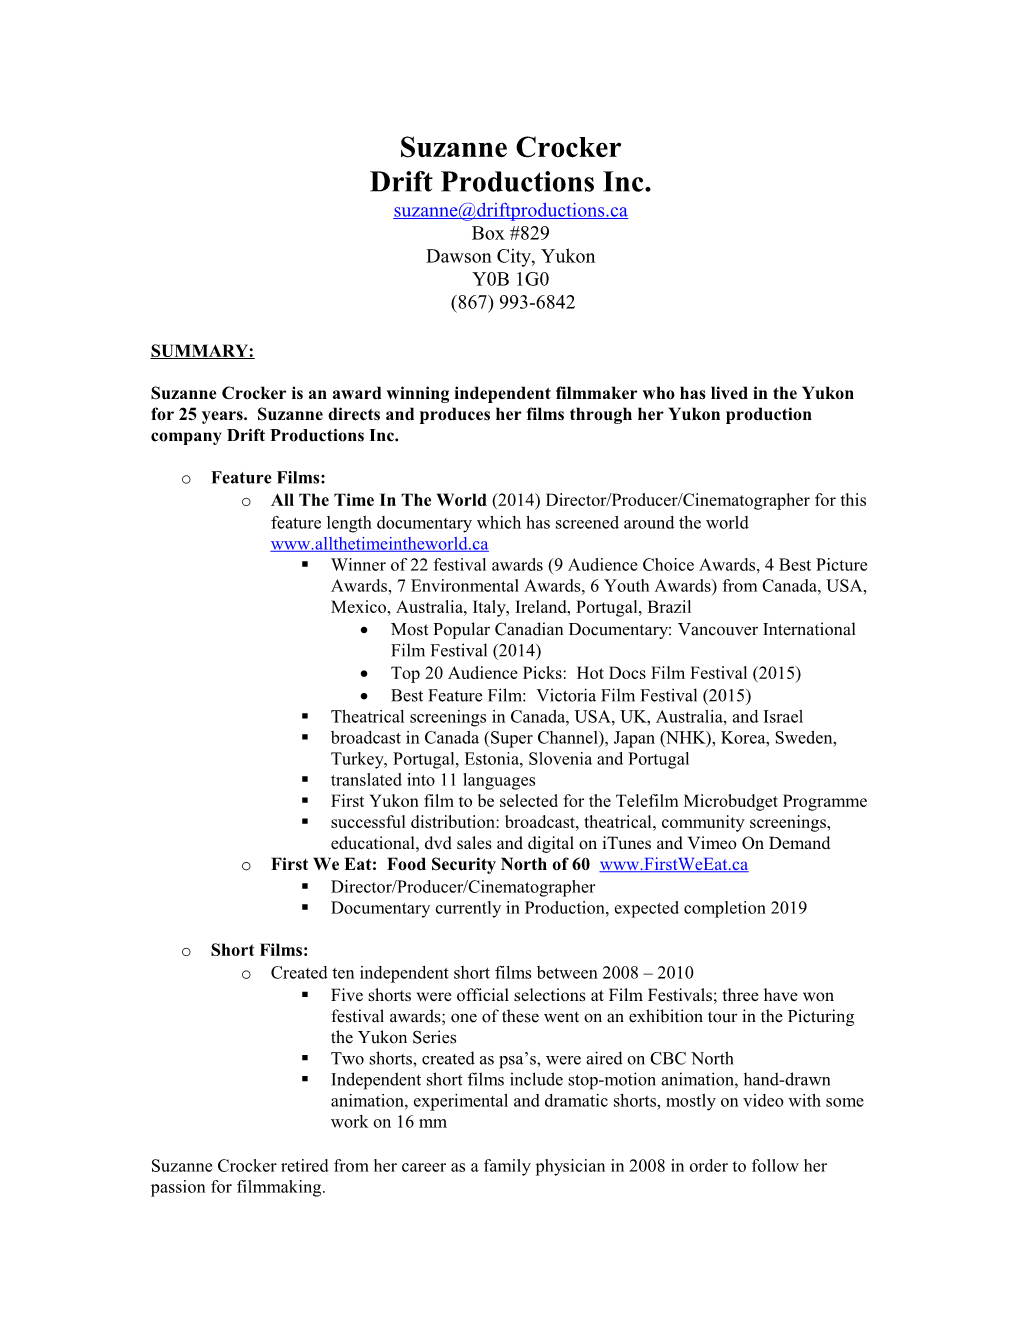 Drift Productions Inc